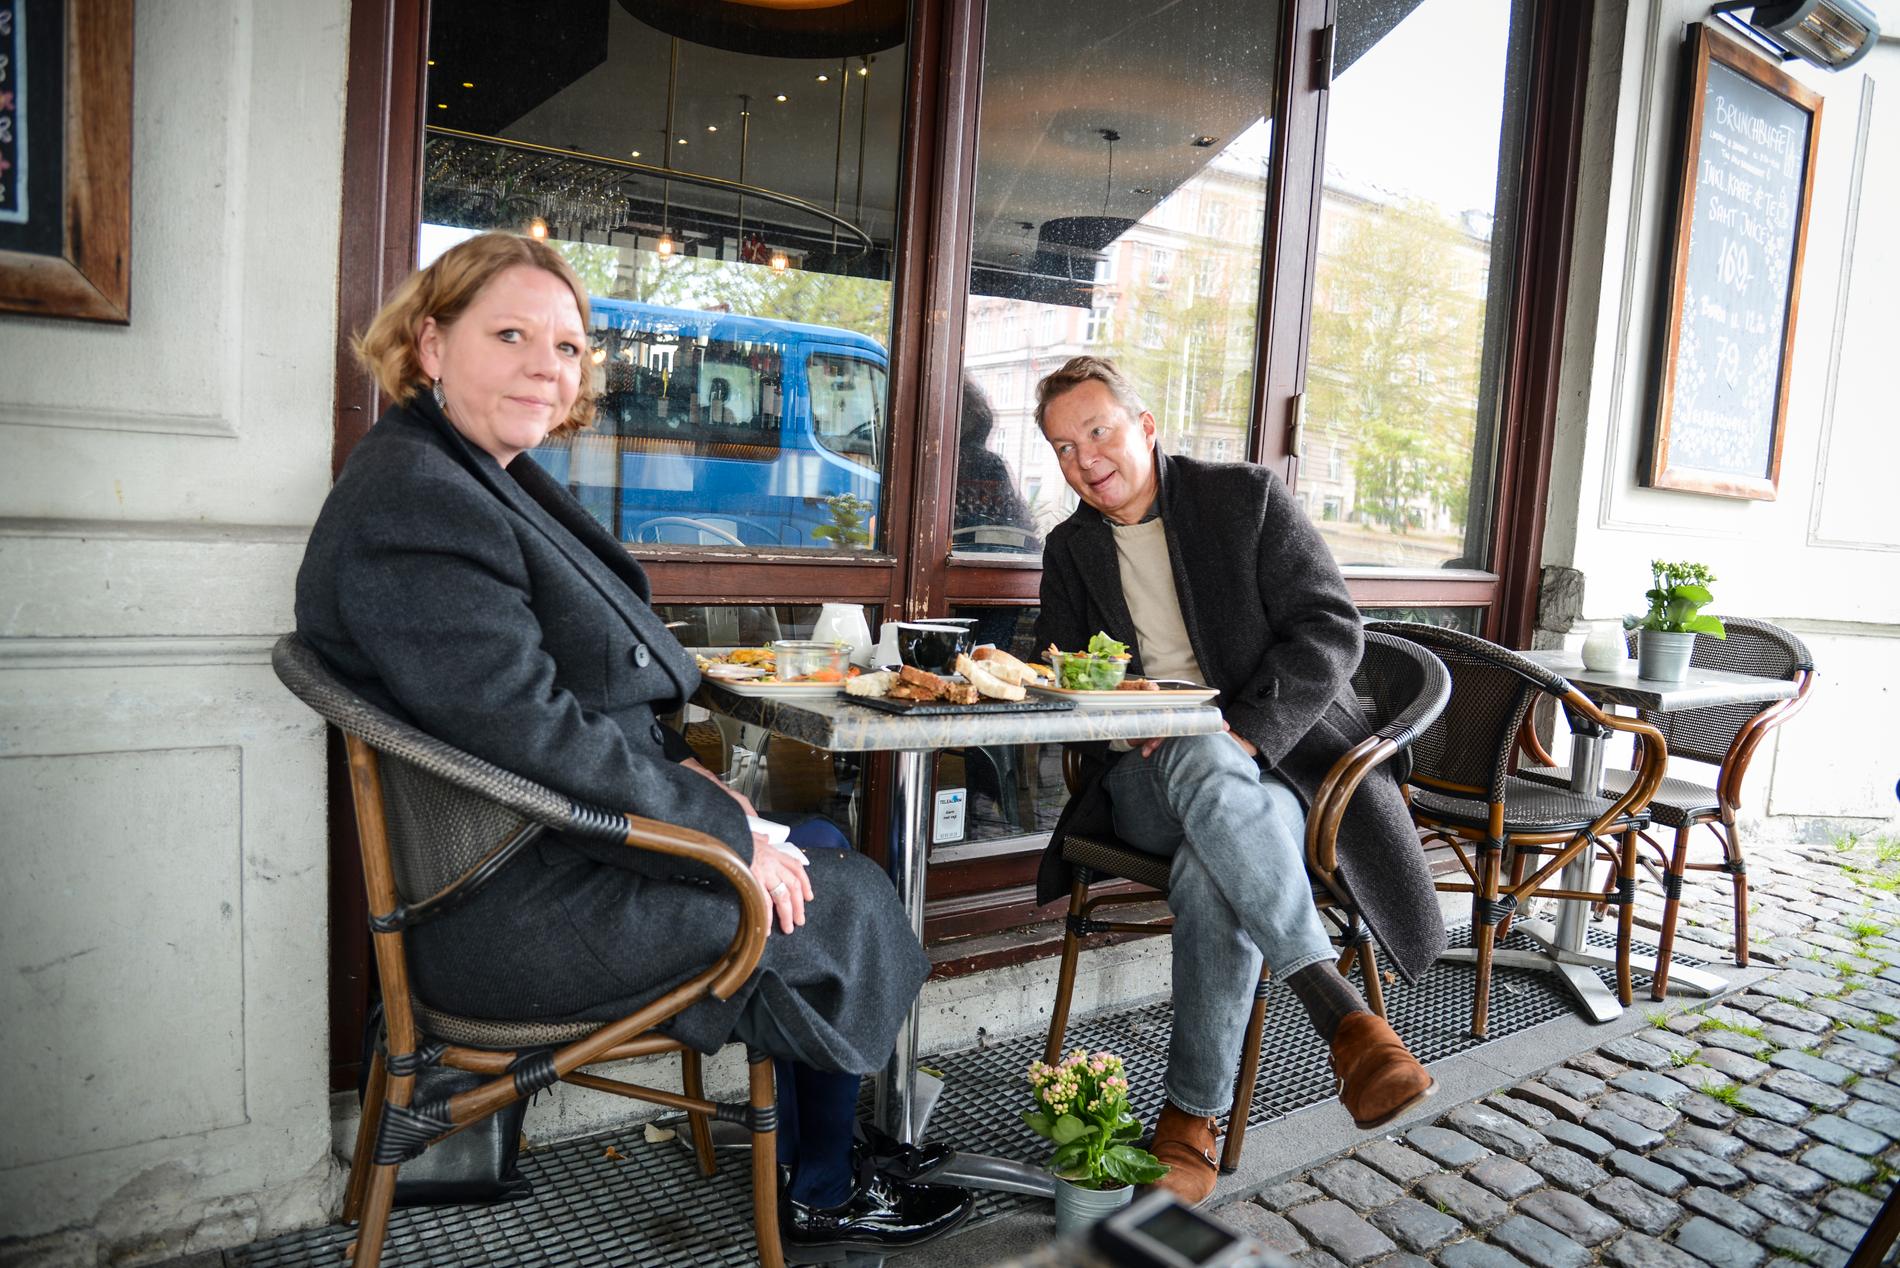 Xenia Lund och Niels Hasager njuter av omelett under markisen i vårregnet. "Det är det mest fantastiska som hänt mig på två månader", säger Xenia Lund.